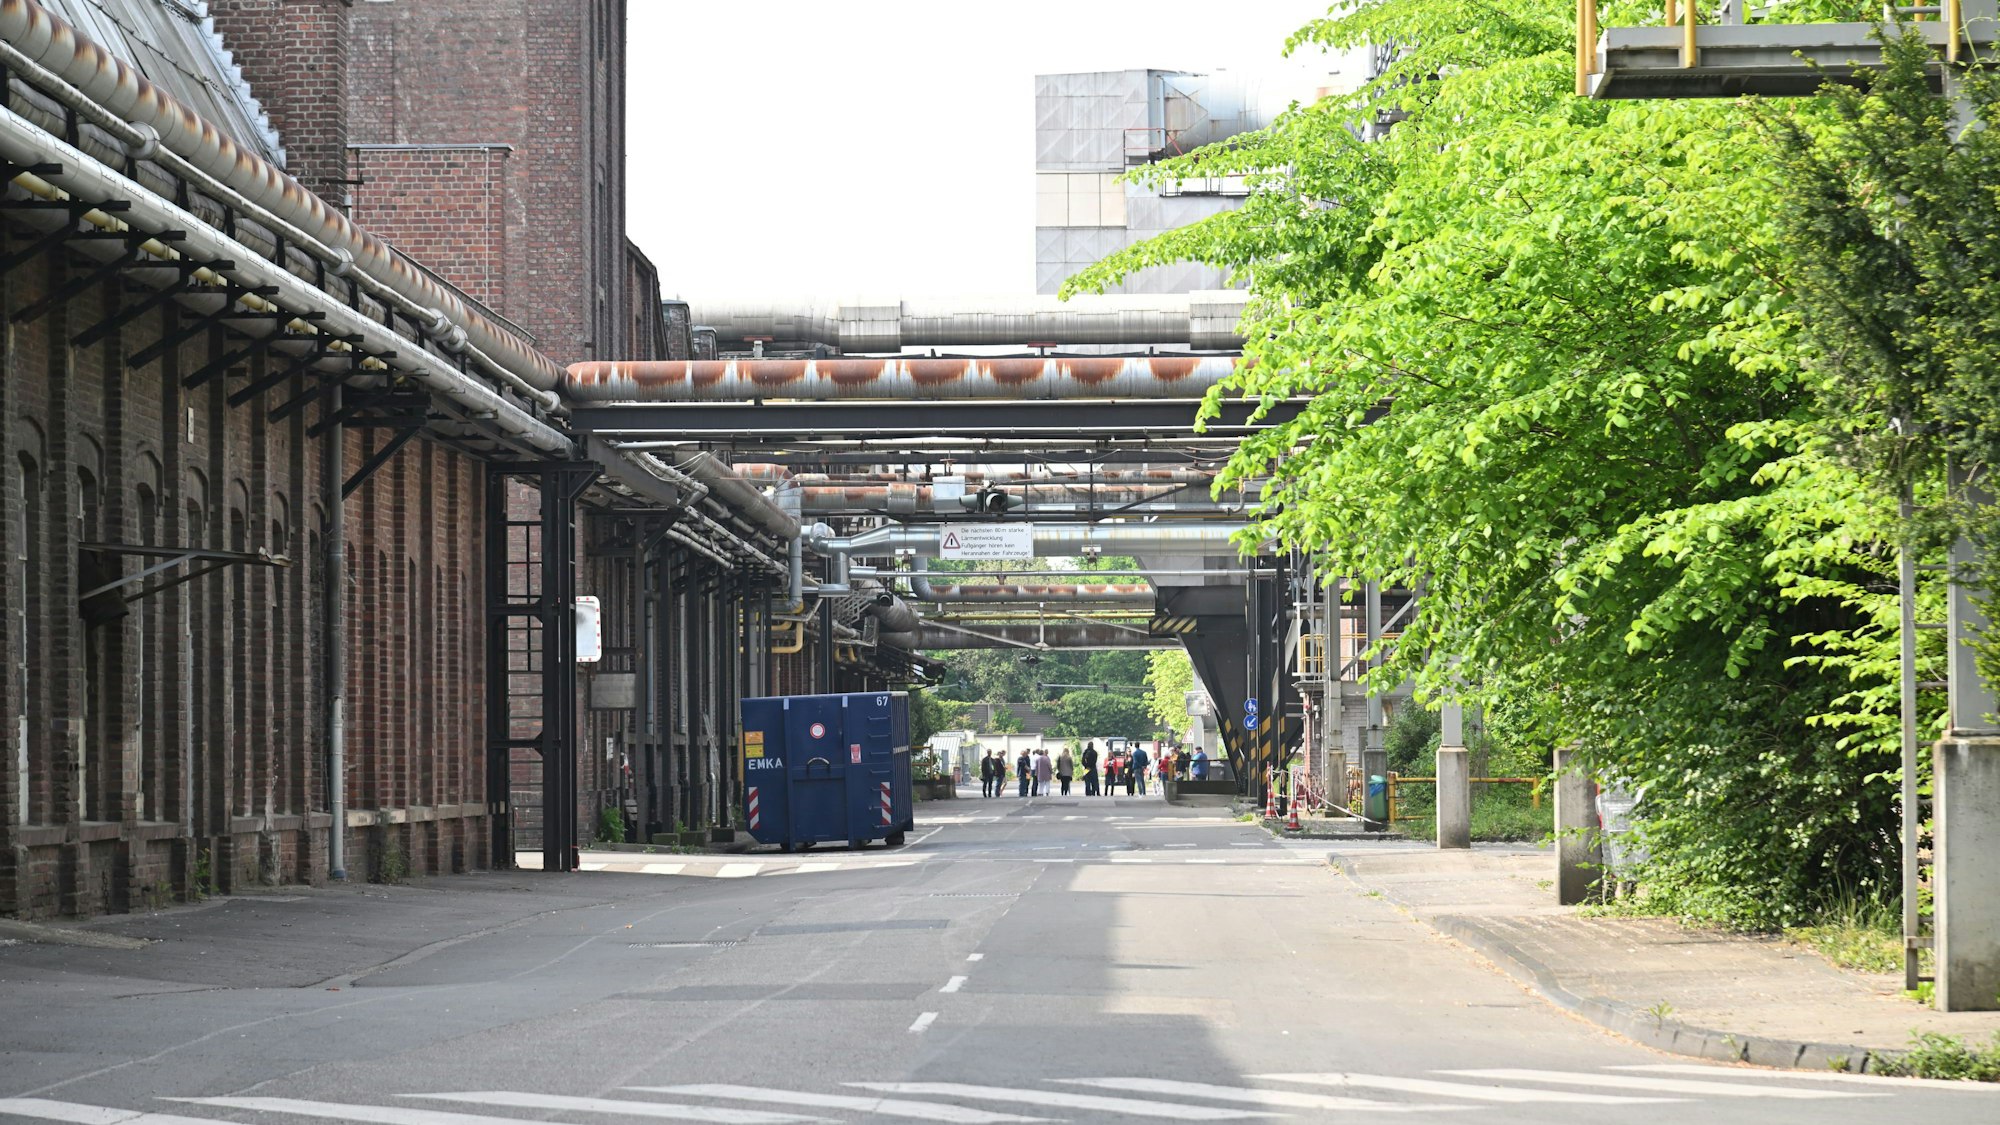 Eine Straße auf dem Zanders-Werksgelände. Links alte Fabrikhallen, rechts Bäume und Büsche, dazwischen Rohre, Brücken, ein Container.